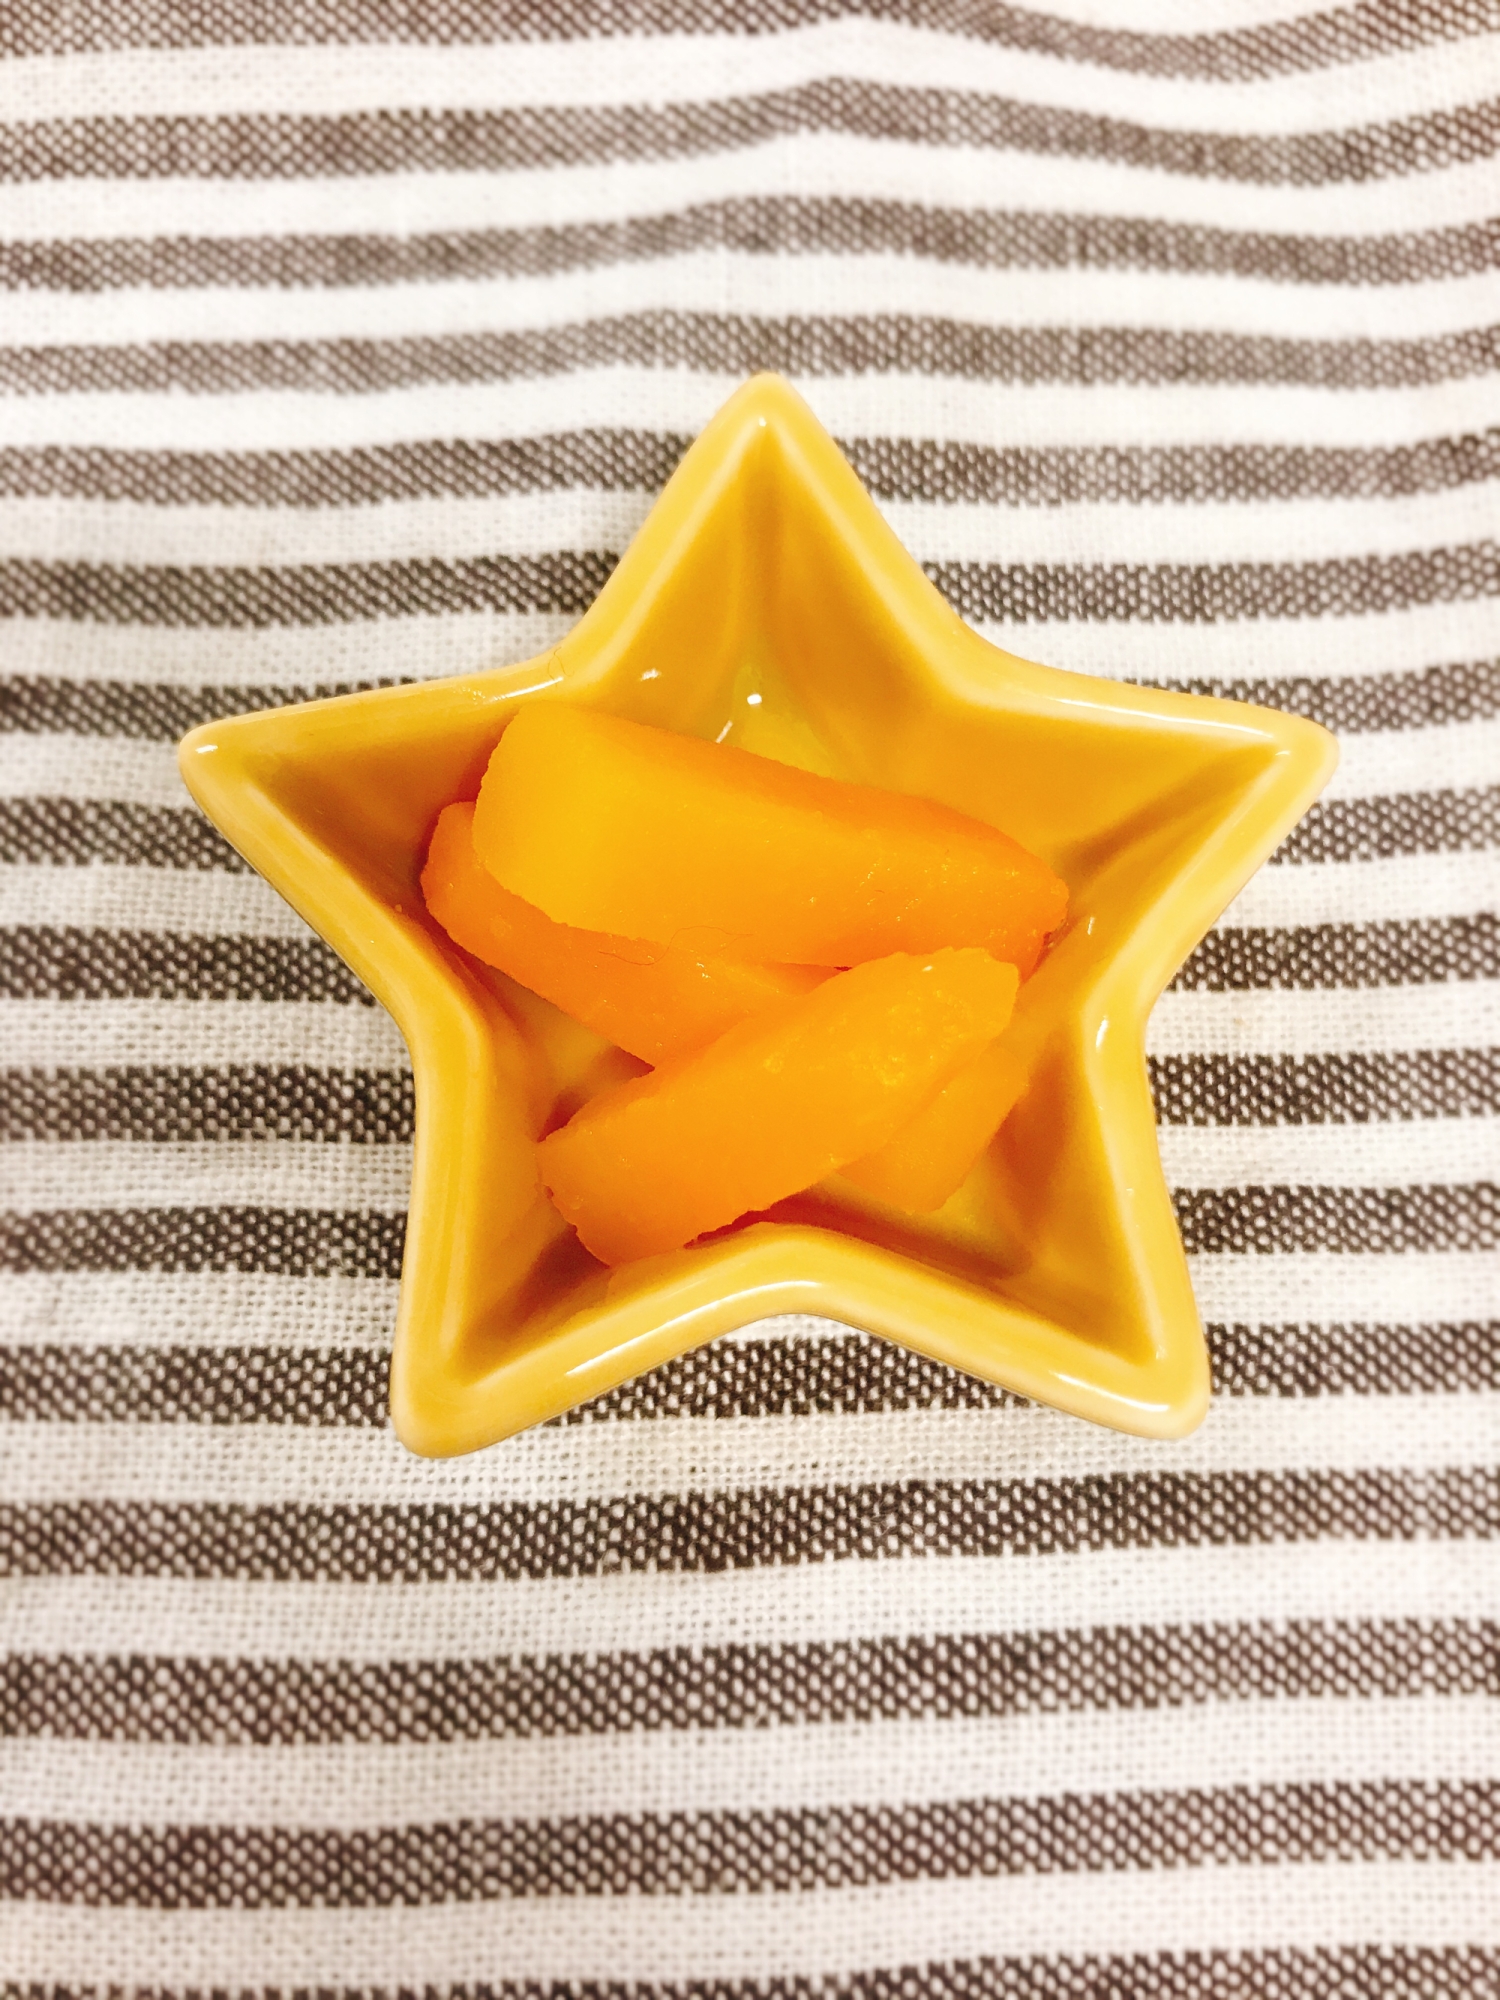 星型のお皿にかぼちゃスティックが数本盛られている